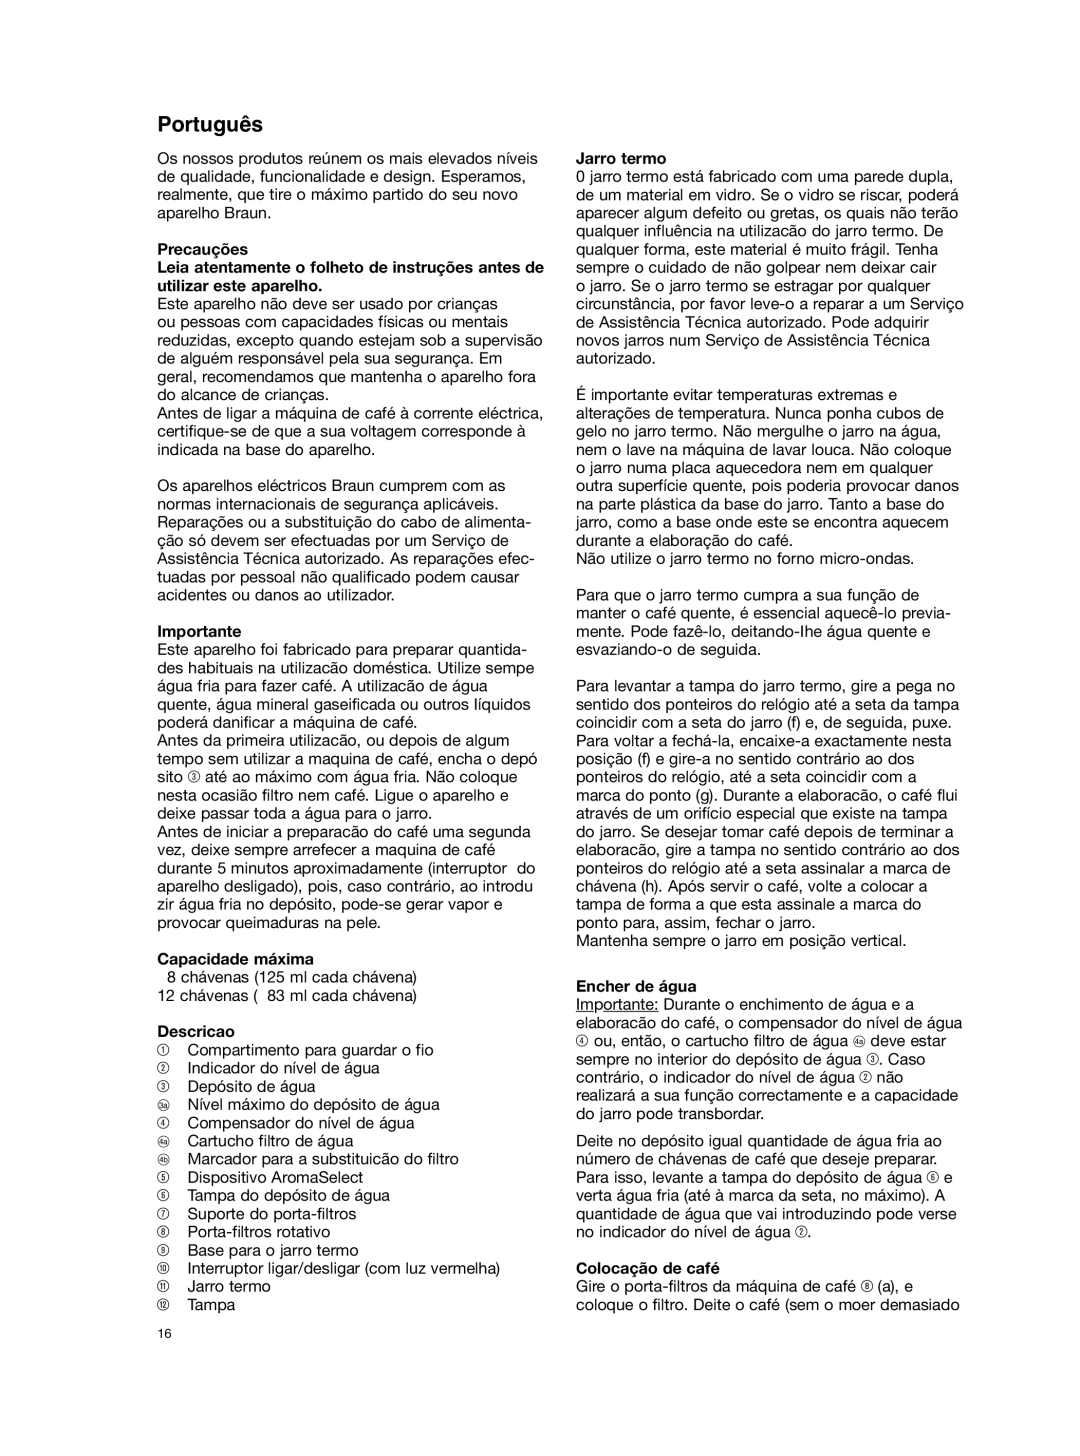 Braun KF 177 manual Português, Precauções, Importante, Capacidade máxima, Descricao, Jarro termo, Encher de água 